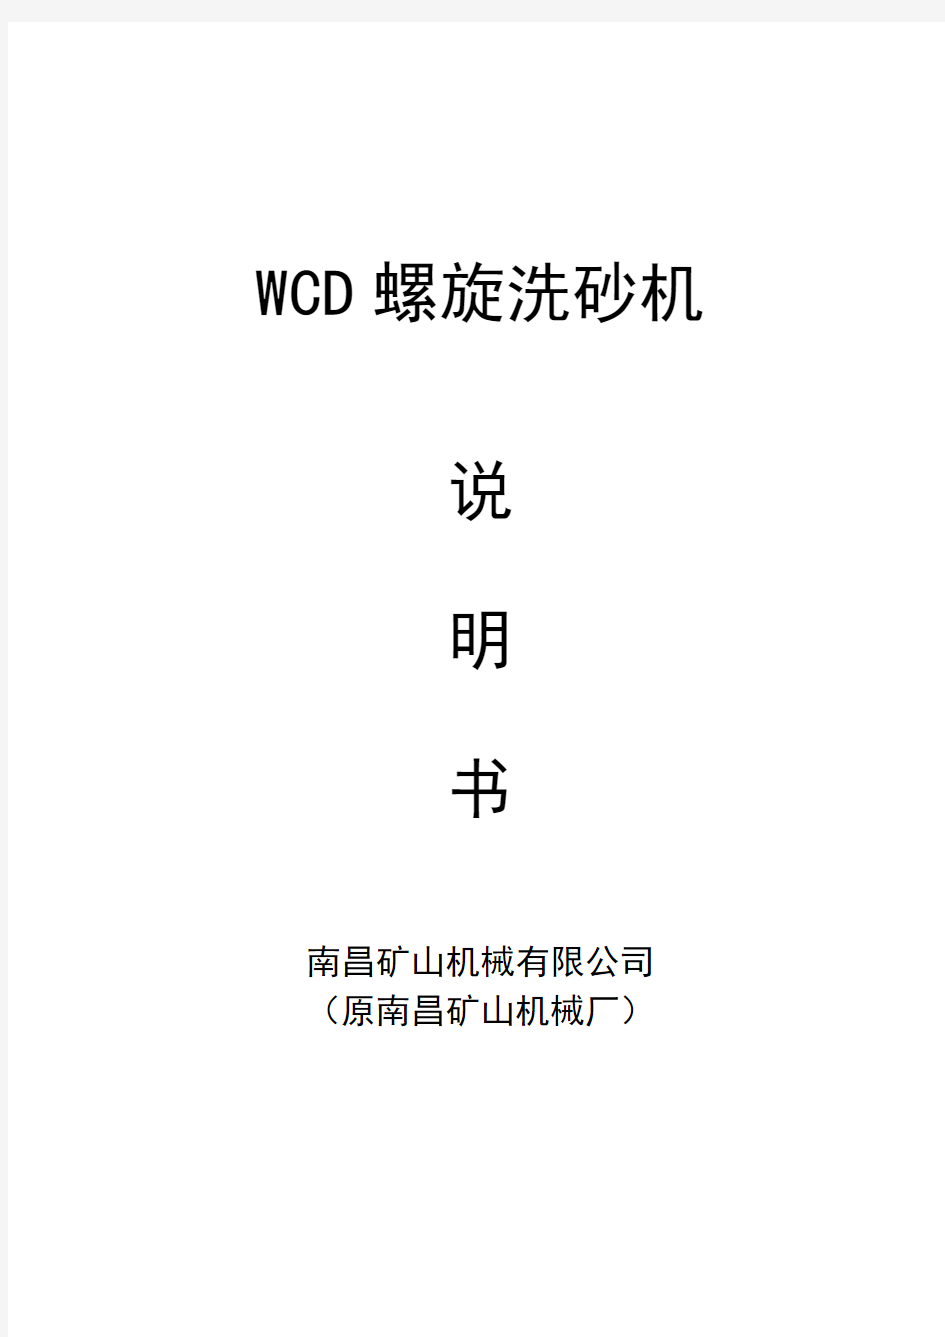 WCD螺旋洗砂机说明书